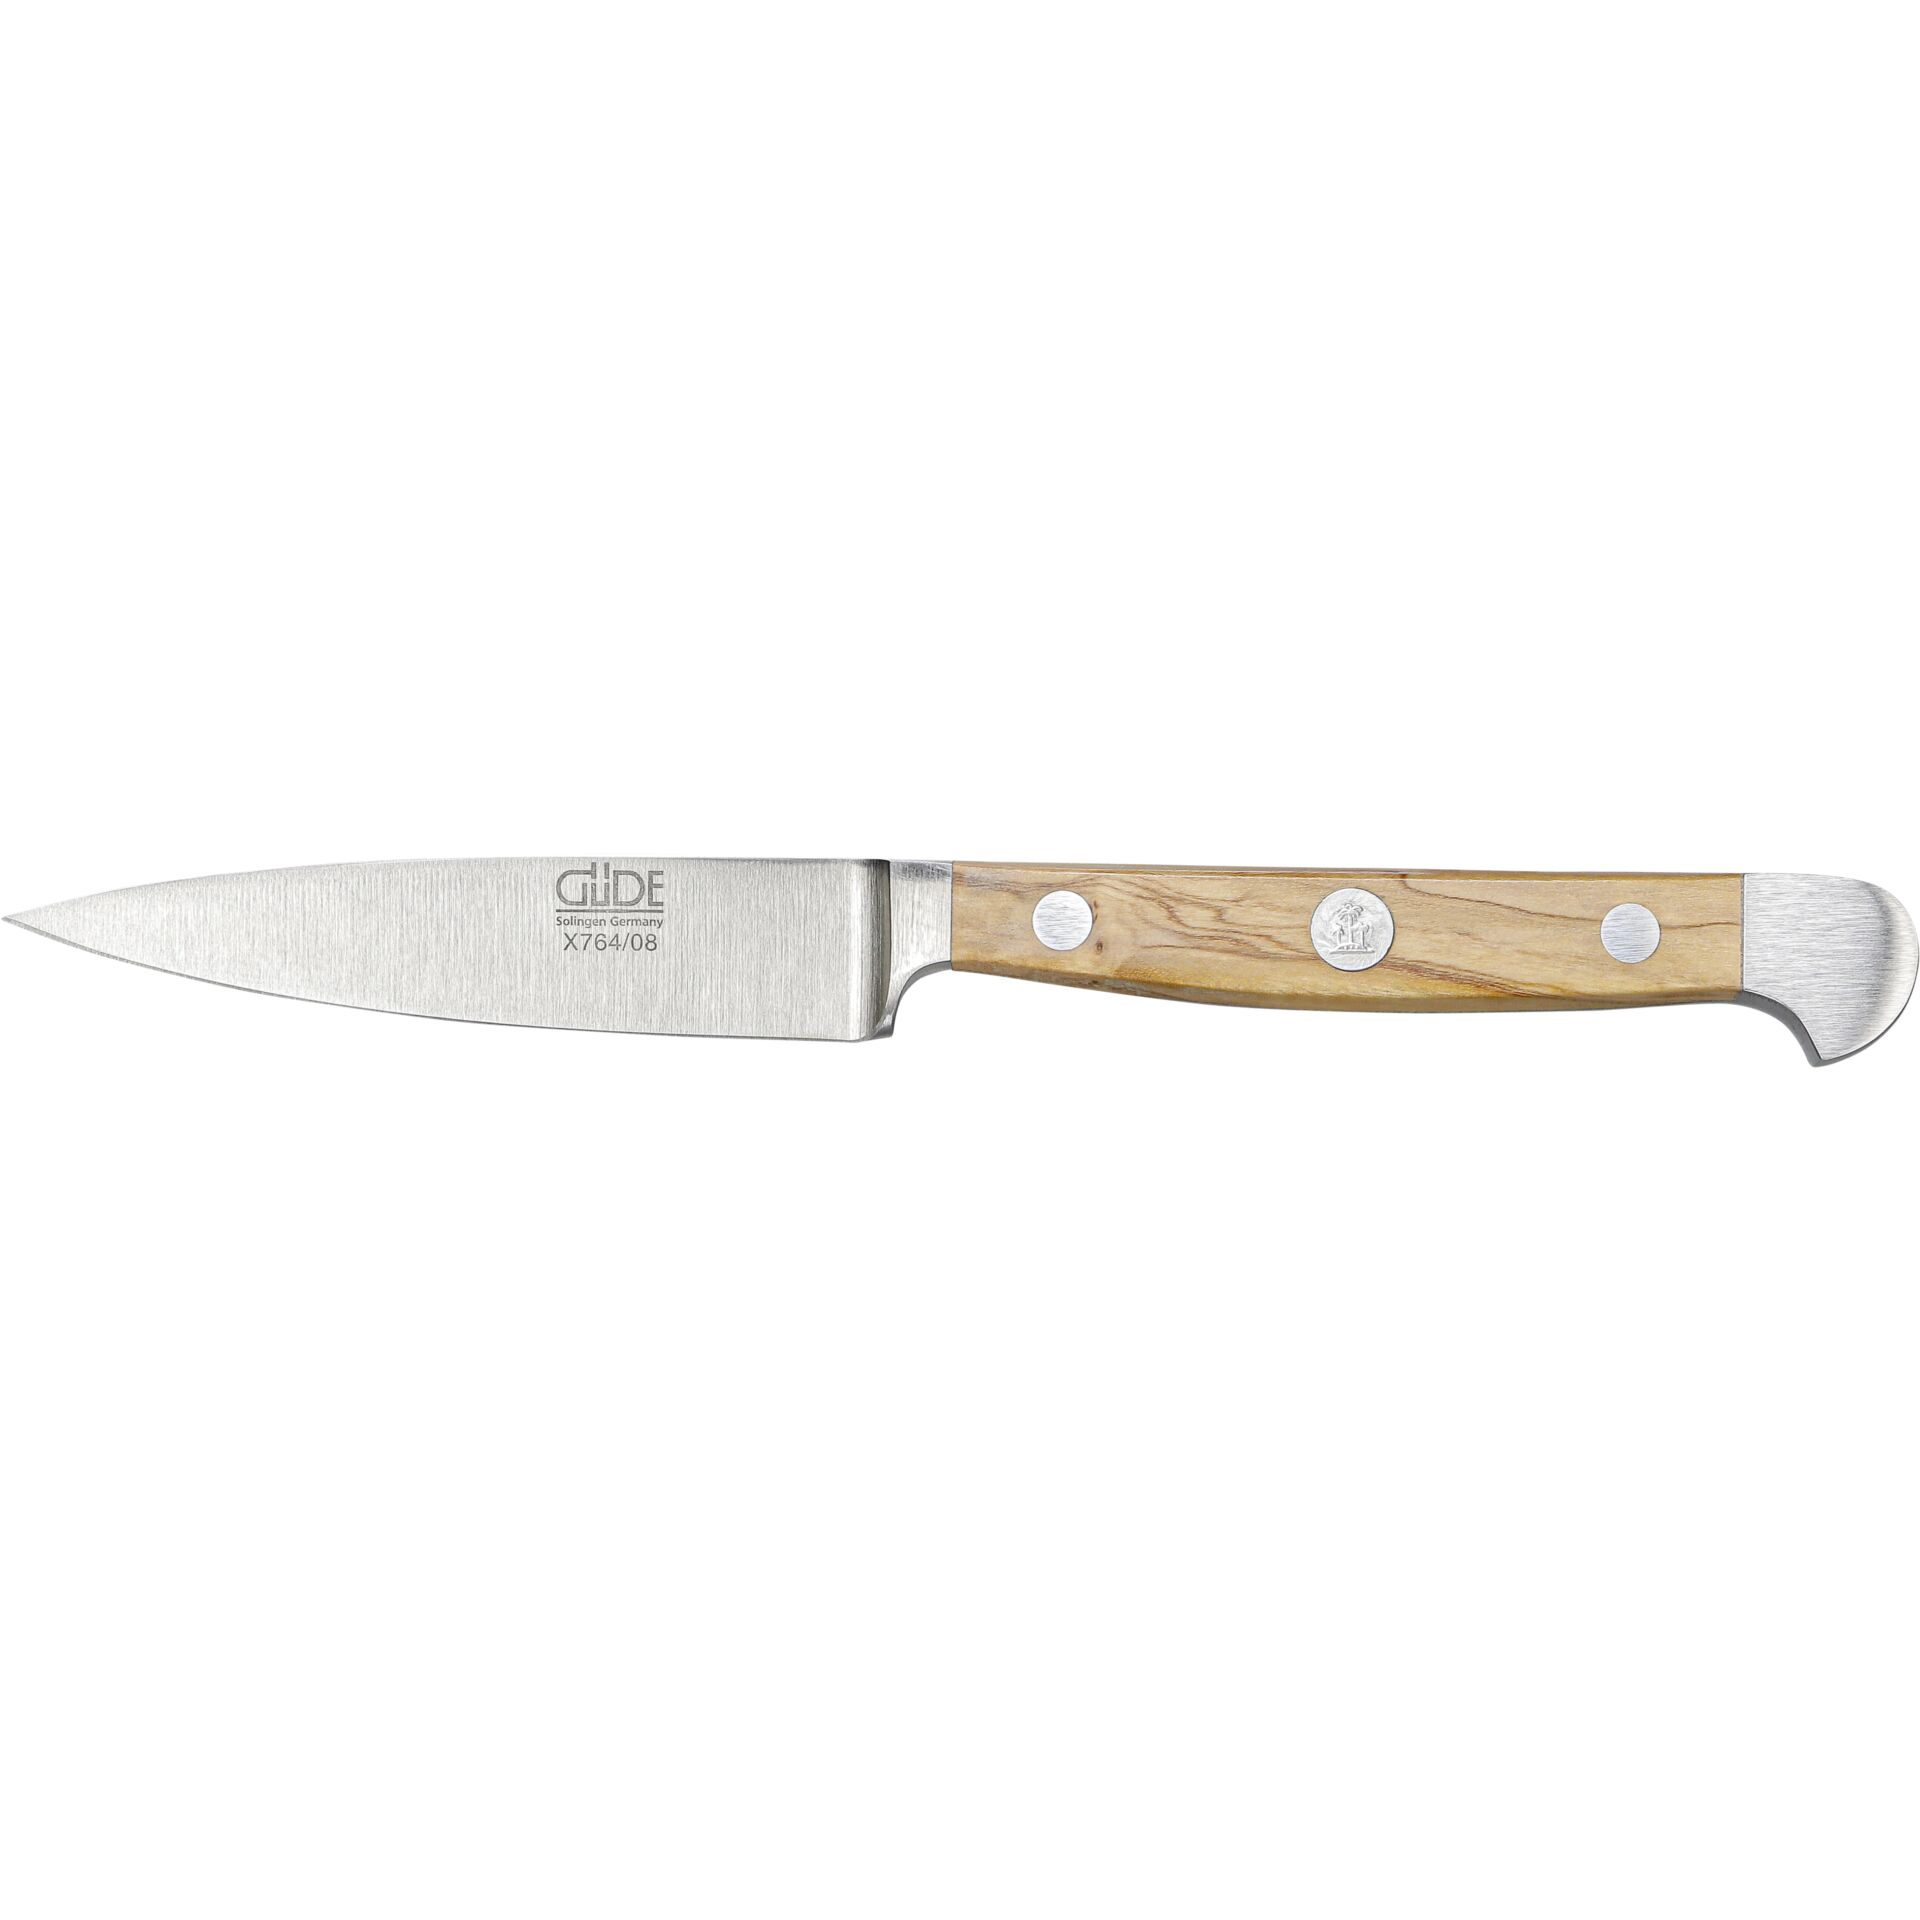 Güde Alpha paring knife 8 cm Olive Wood